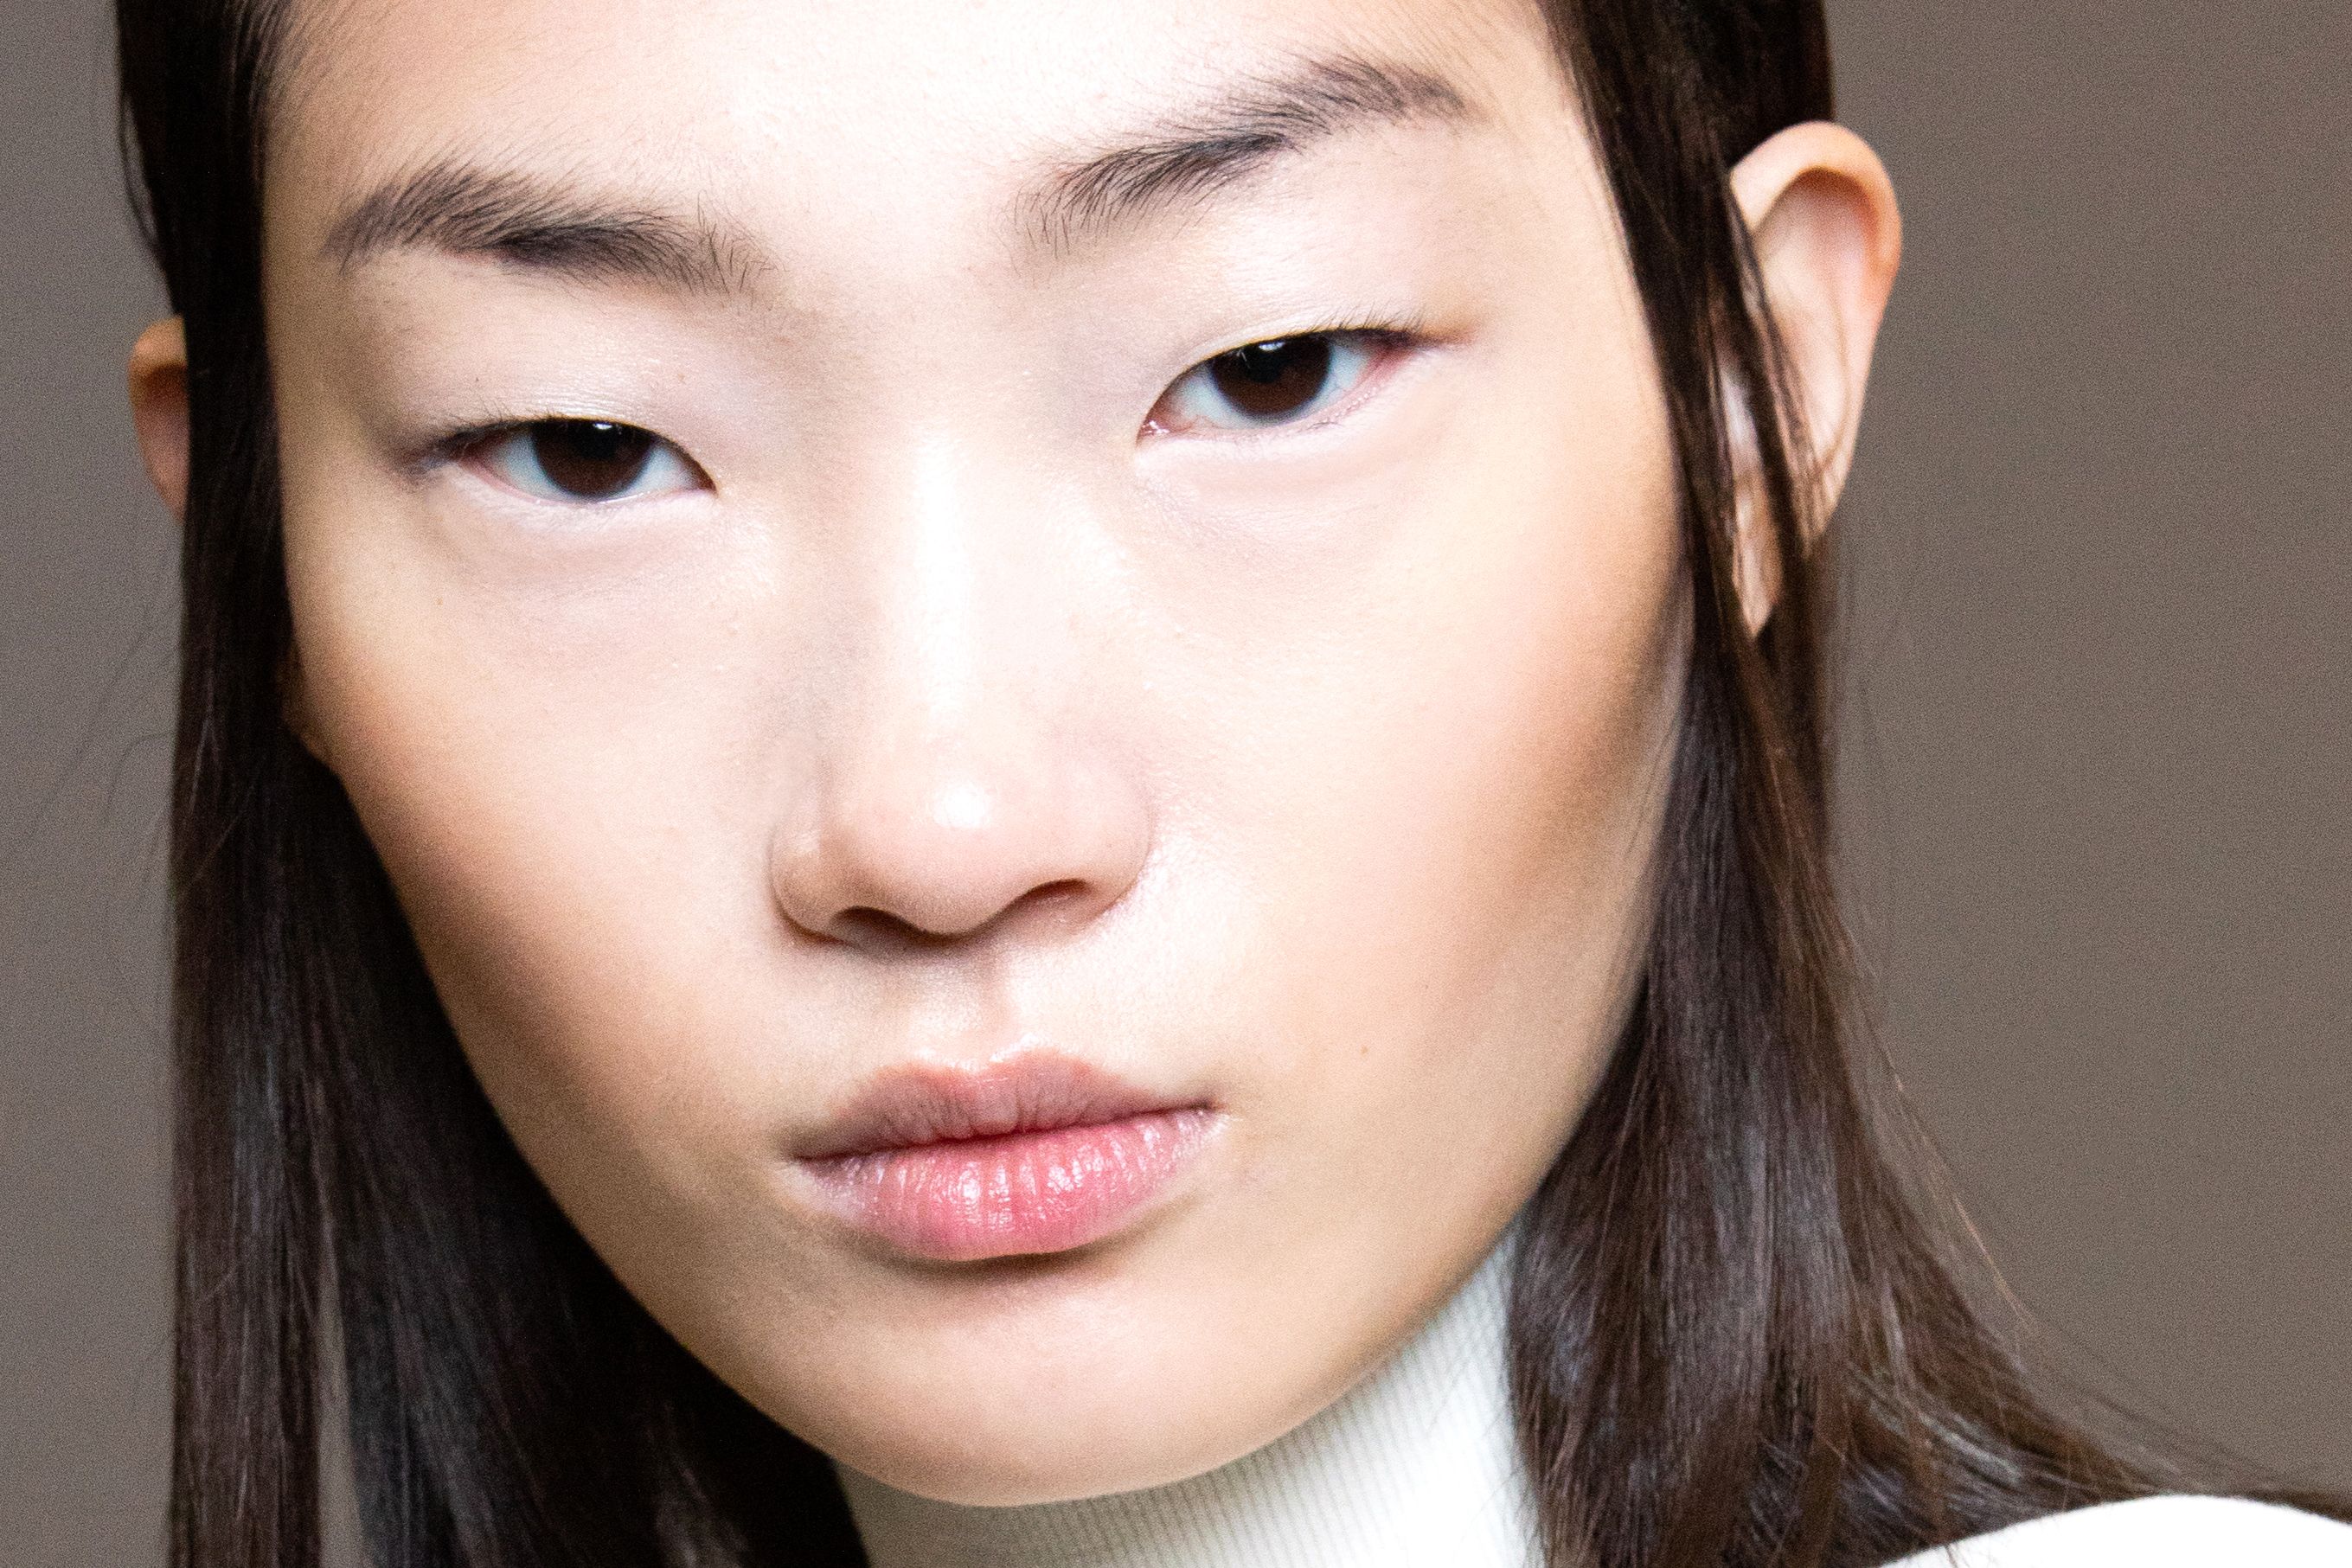 Личного лица. Азиатский нос. Освежающий макияж. Korean Makeup 2022. Японка с подведенными белыми глазами.